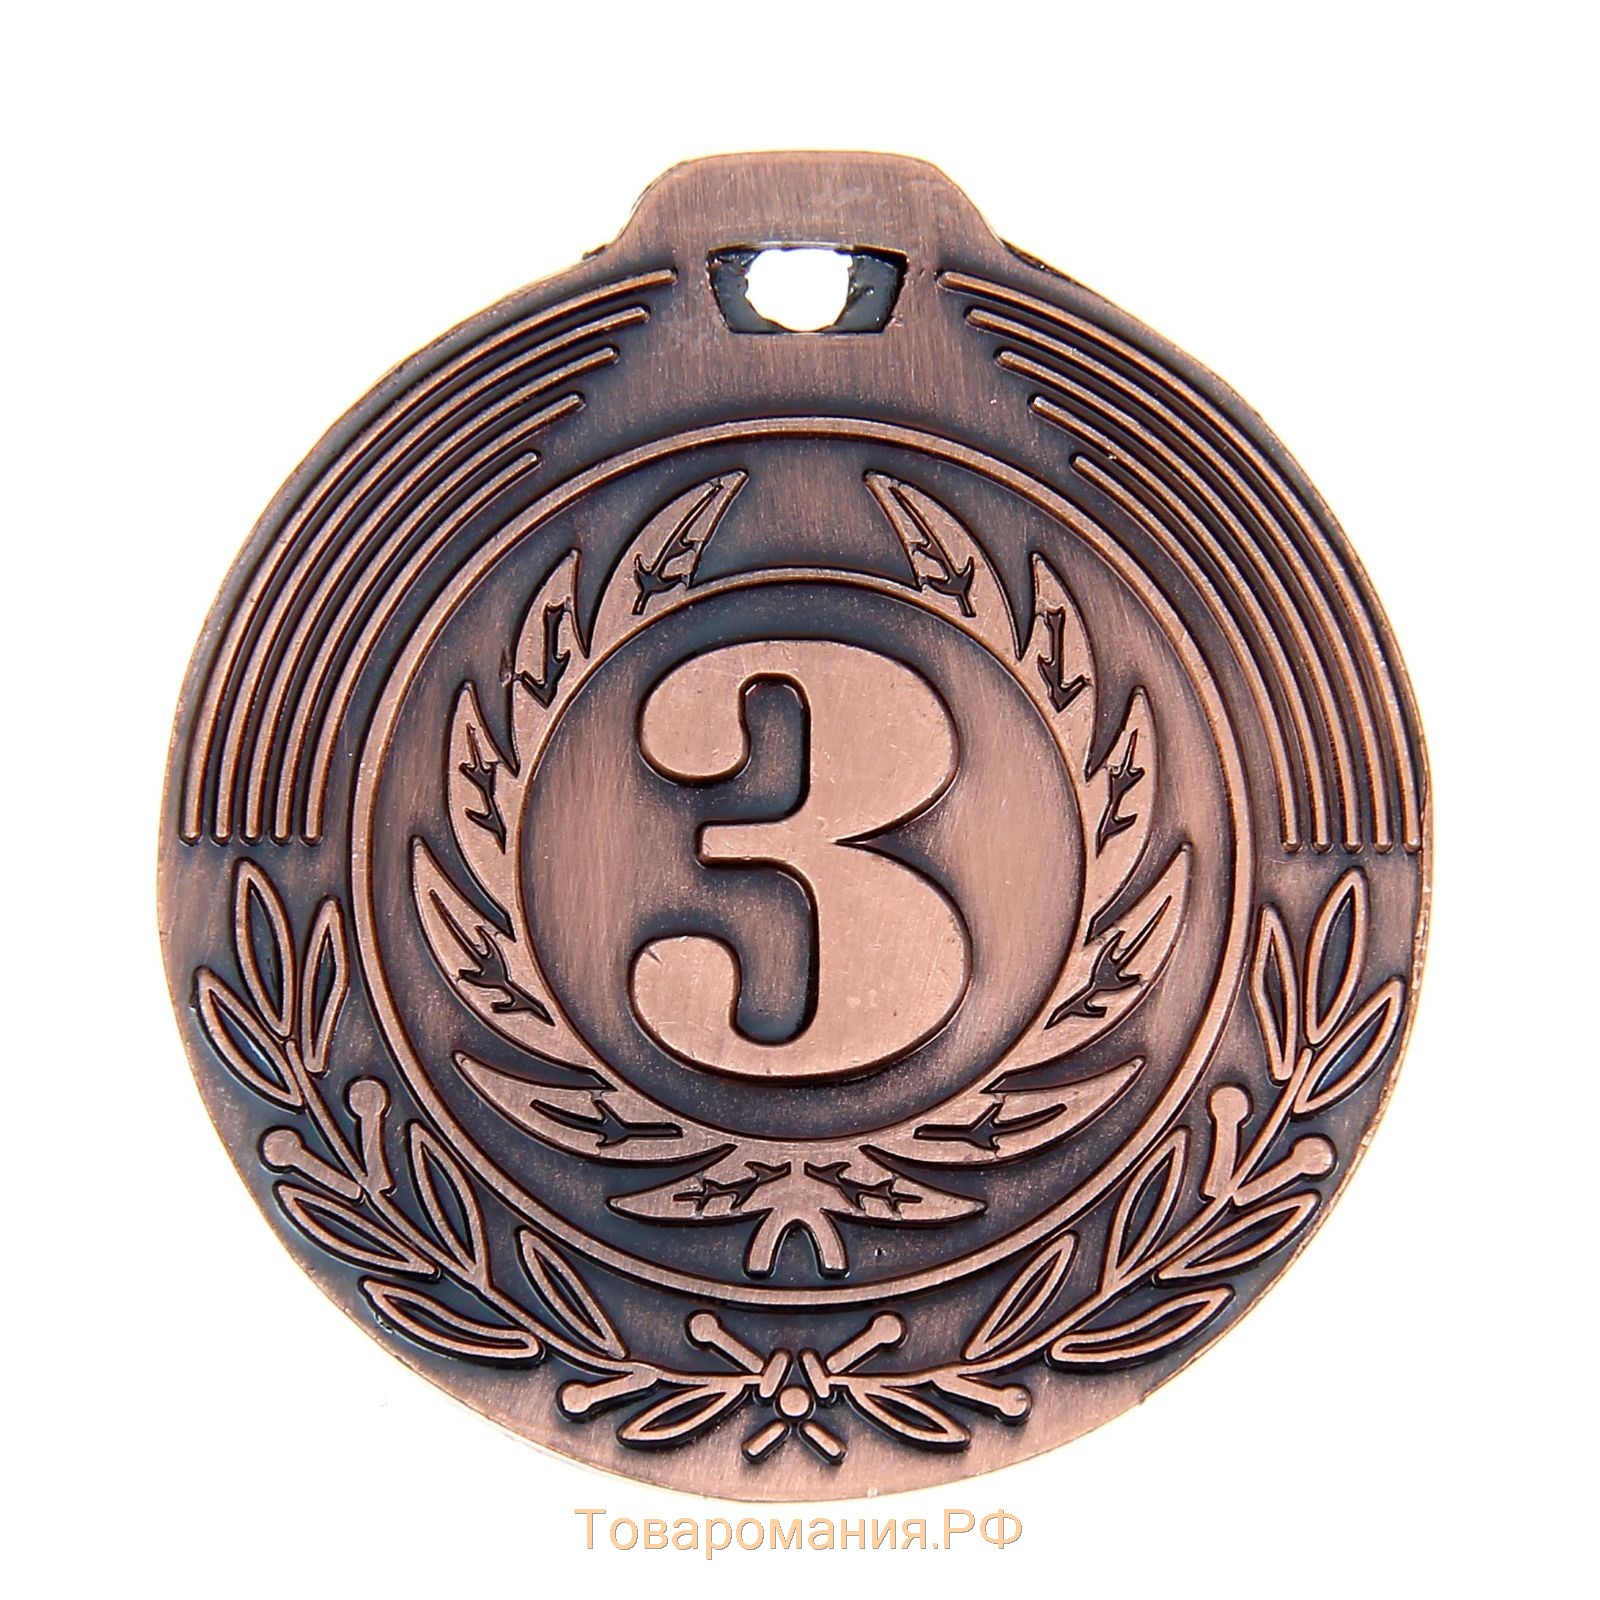 Медаль призовая 021, d= 4 см. 3 место. Цвет бронза. Без ленты